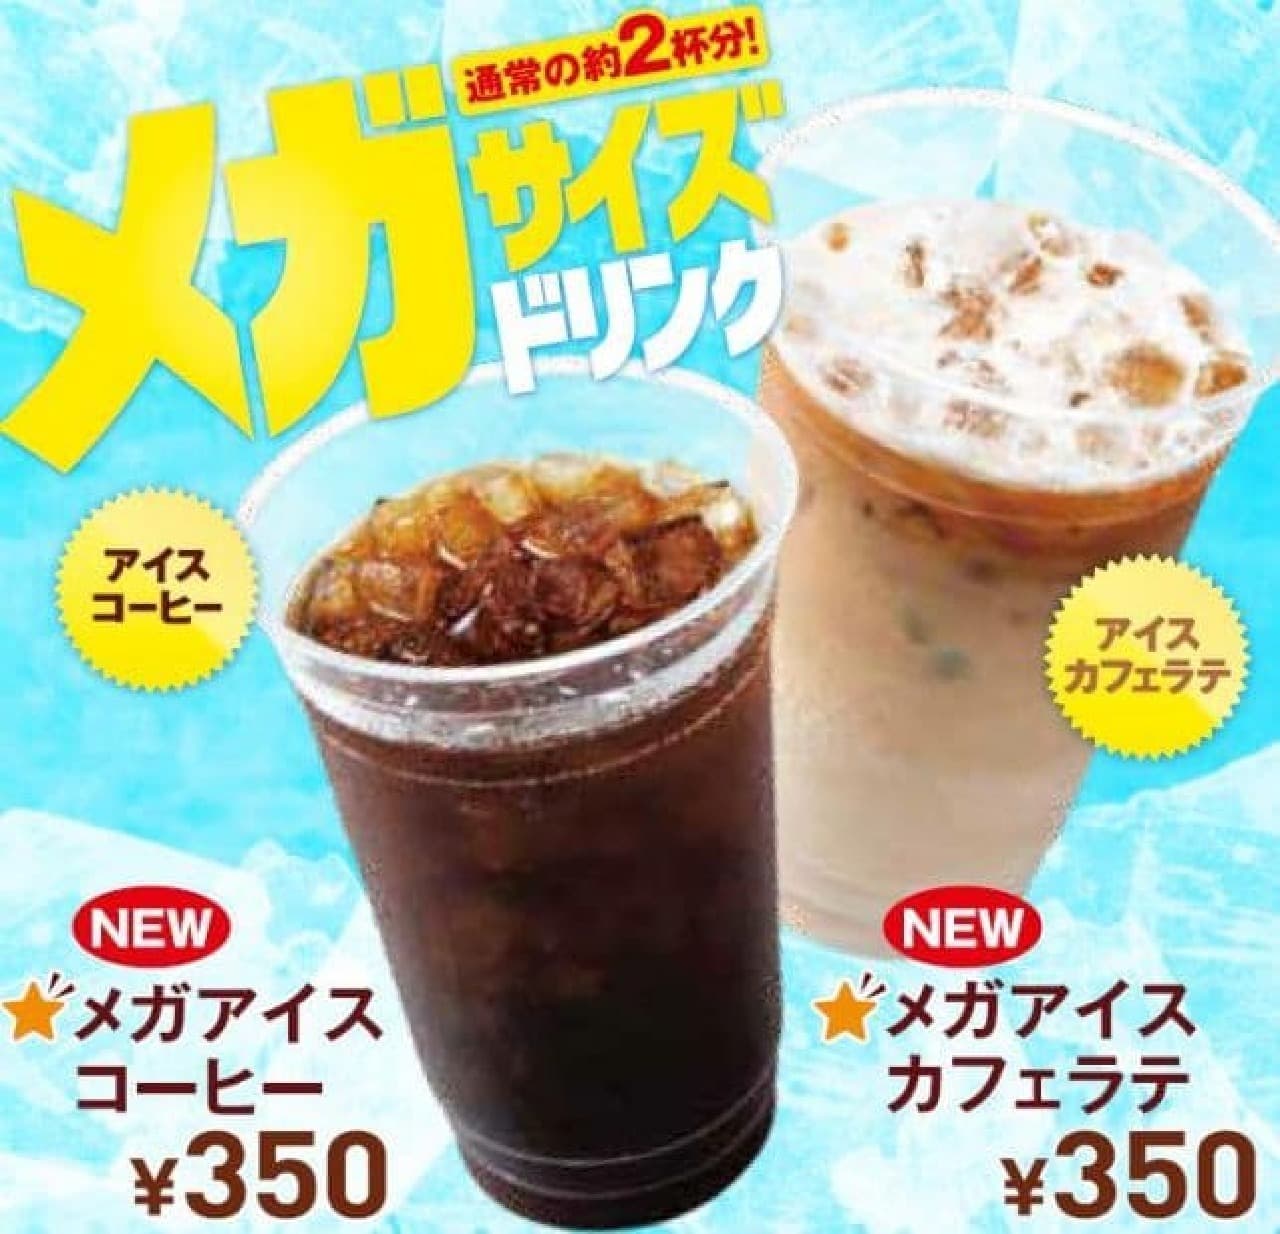 Lotteria "Mega Iced Coffee" and "Mega Iced Cafe Latte